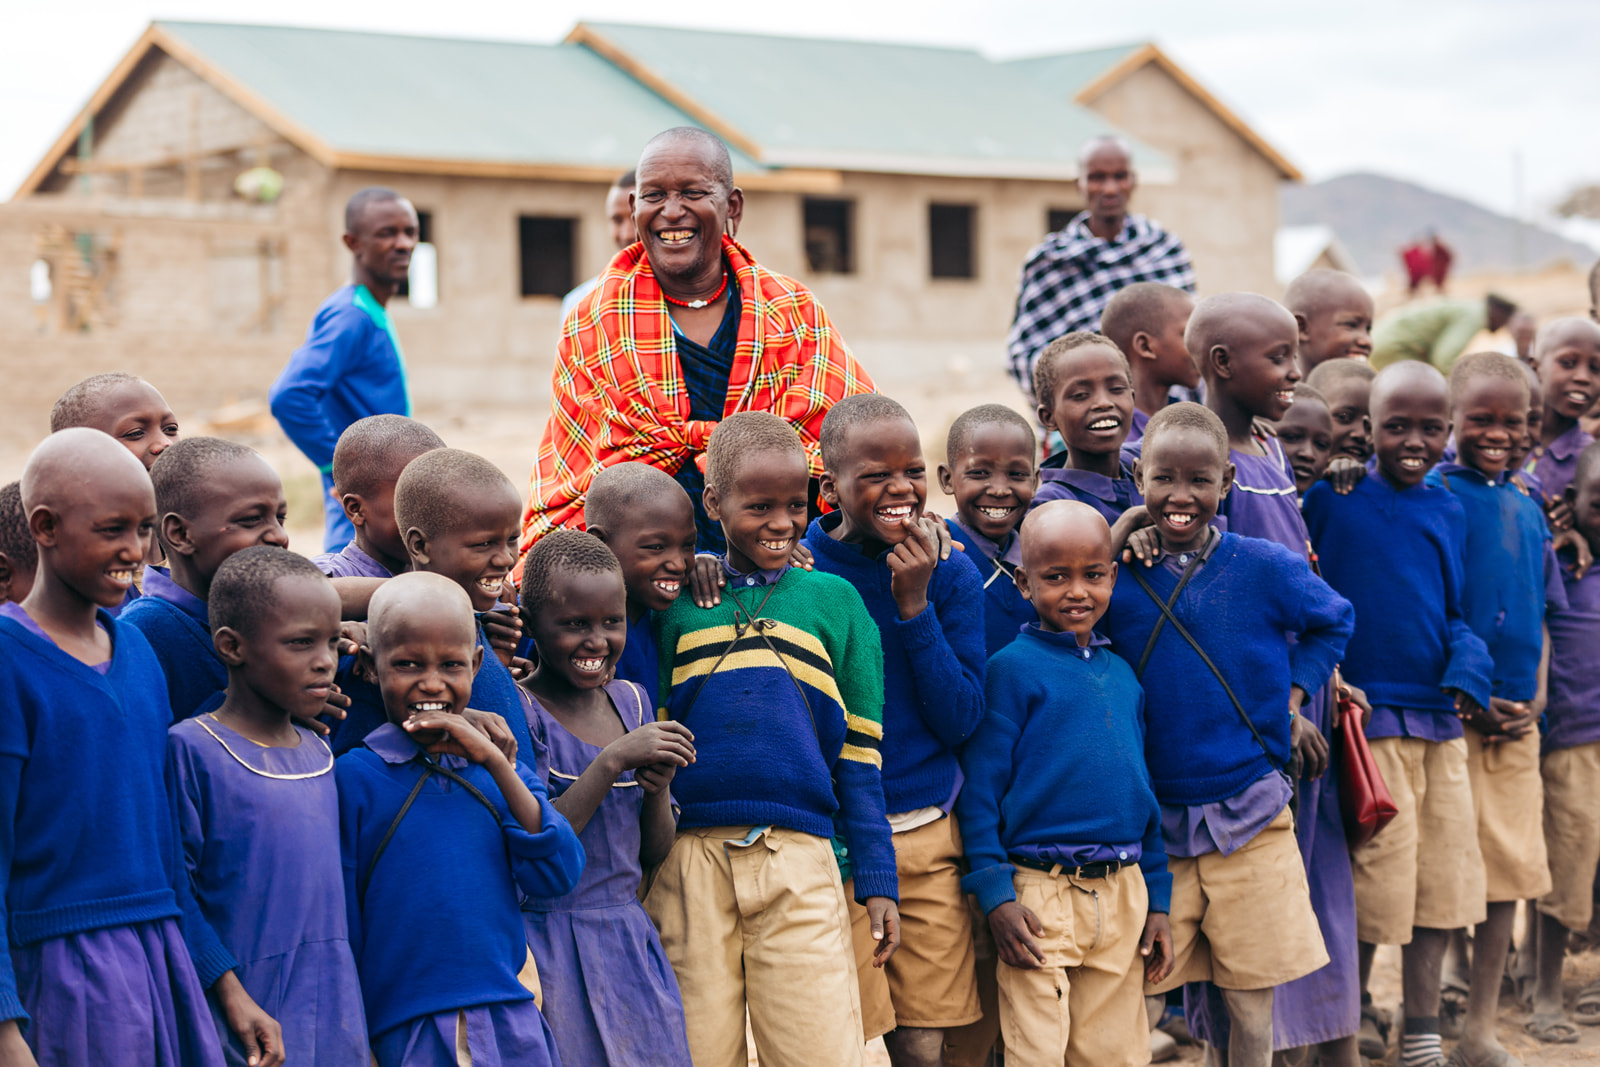 Lachende Schulkinder und ihre Lehrer in Tansania